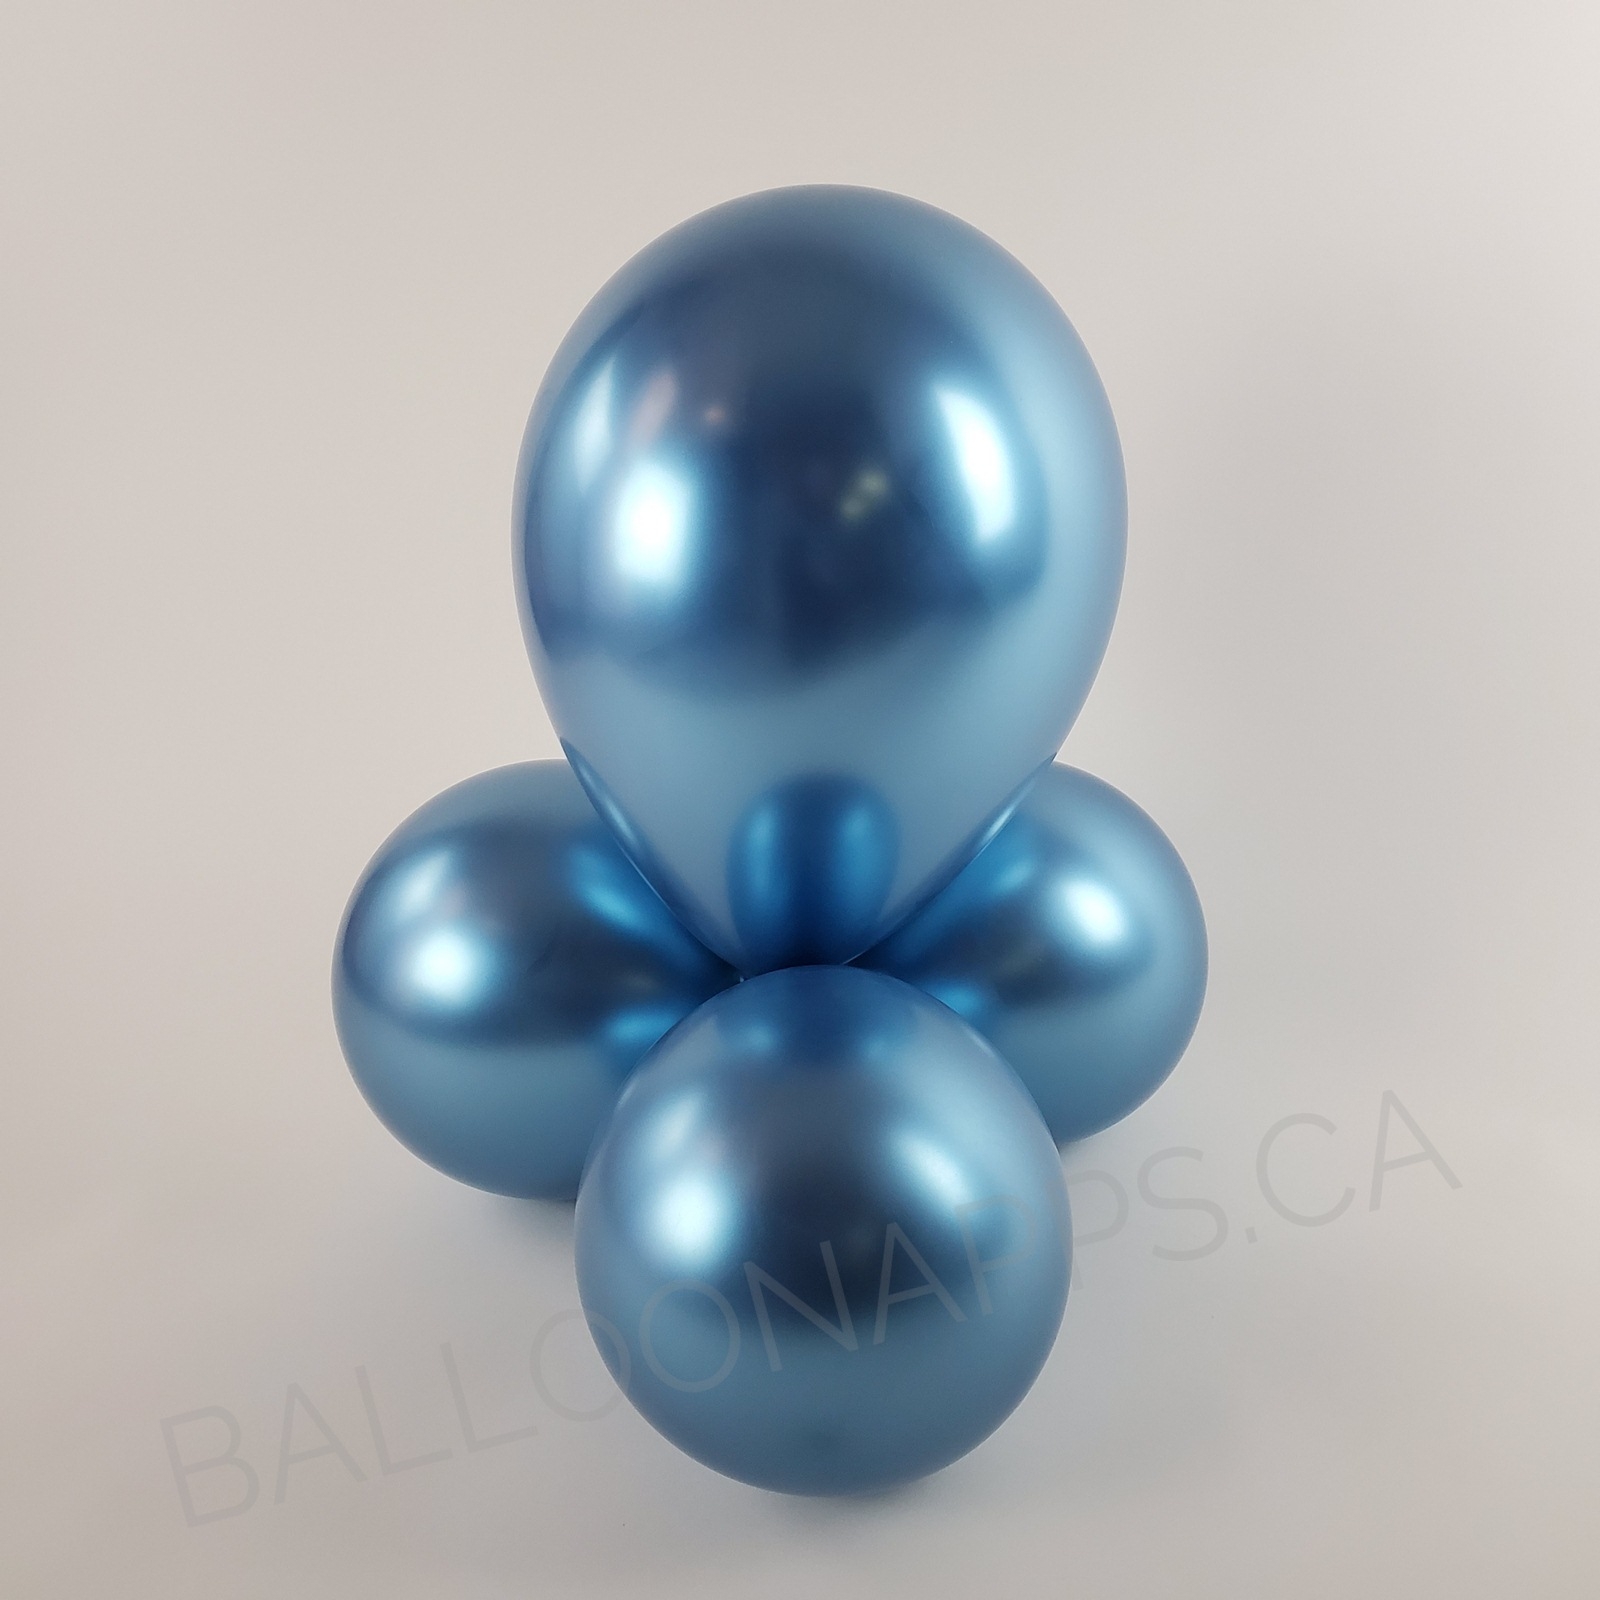 balloon texture Sempertex 260 Reflex Blue